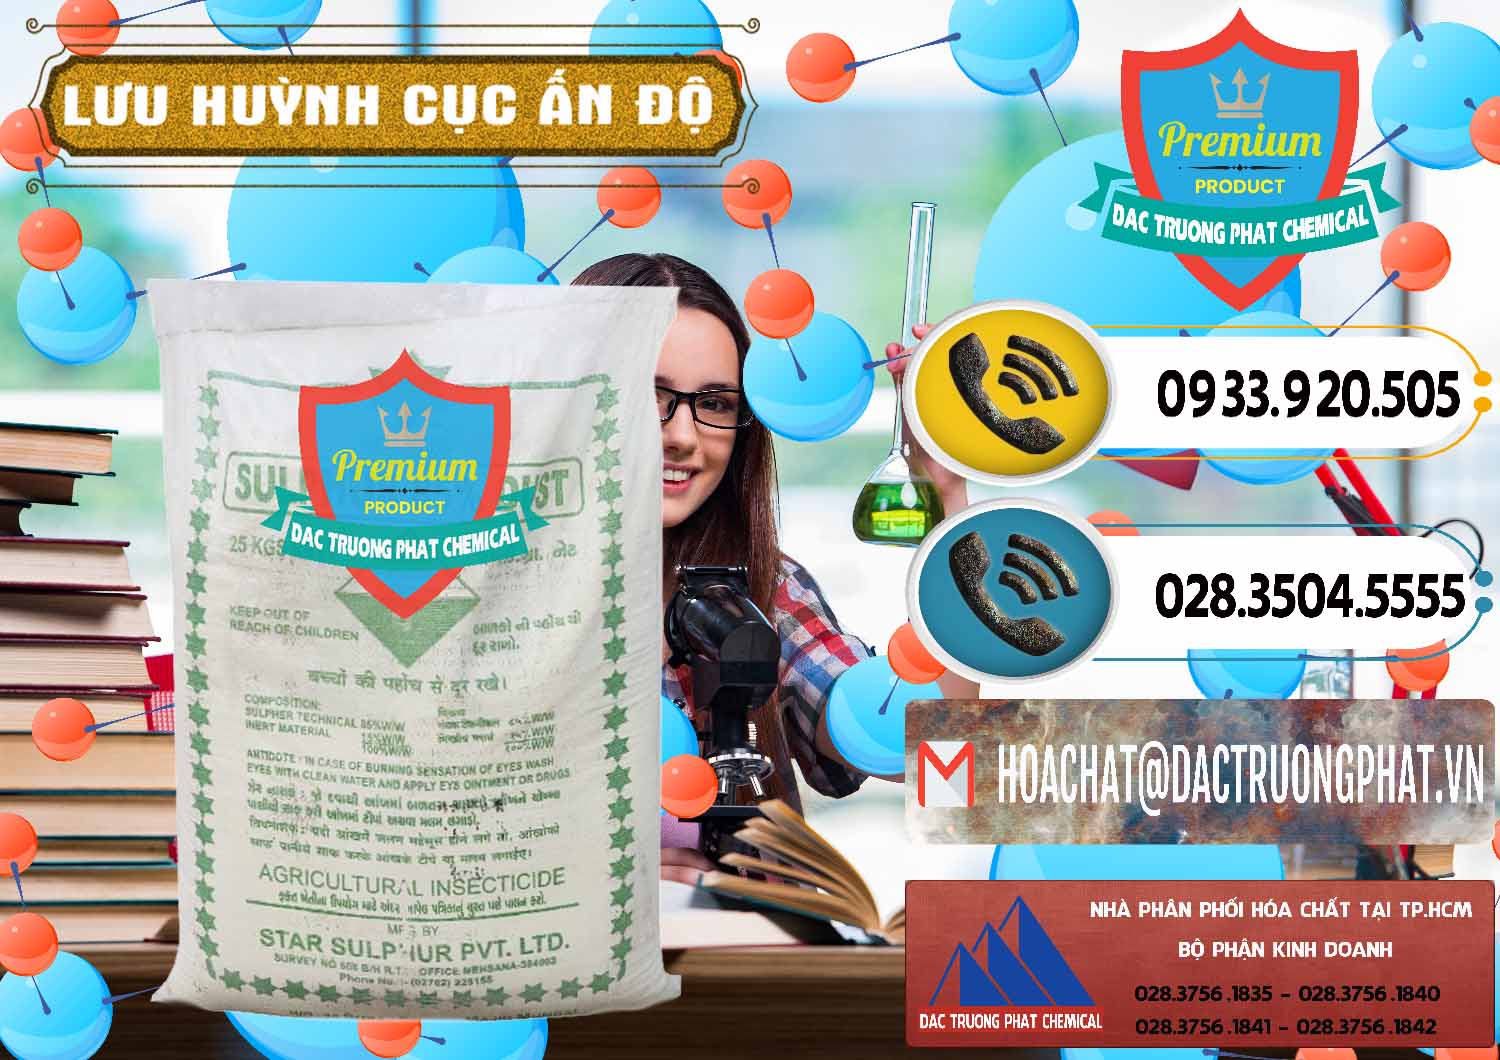 Cty nhập khẩu & bán Lưu huỳnh Cục - Sulfur Ấn Độ India - 0348 - Đơn vị bán & phân phối hóa chất tại TP.HCM - hoachatdetnhuom.vn